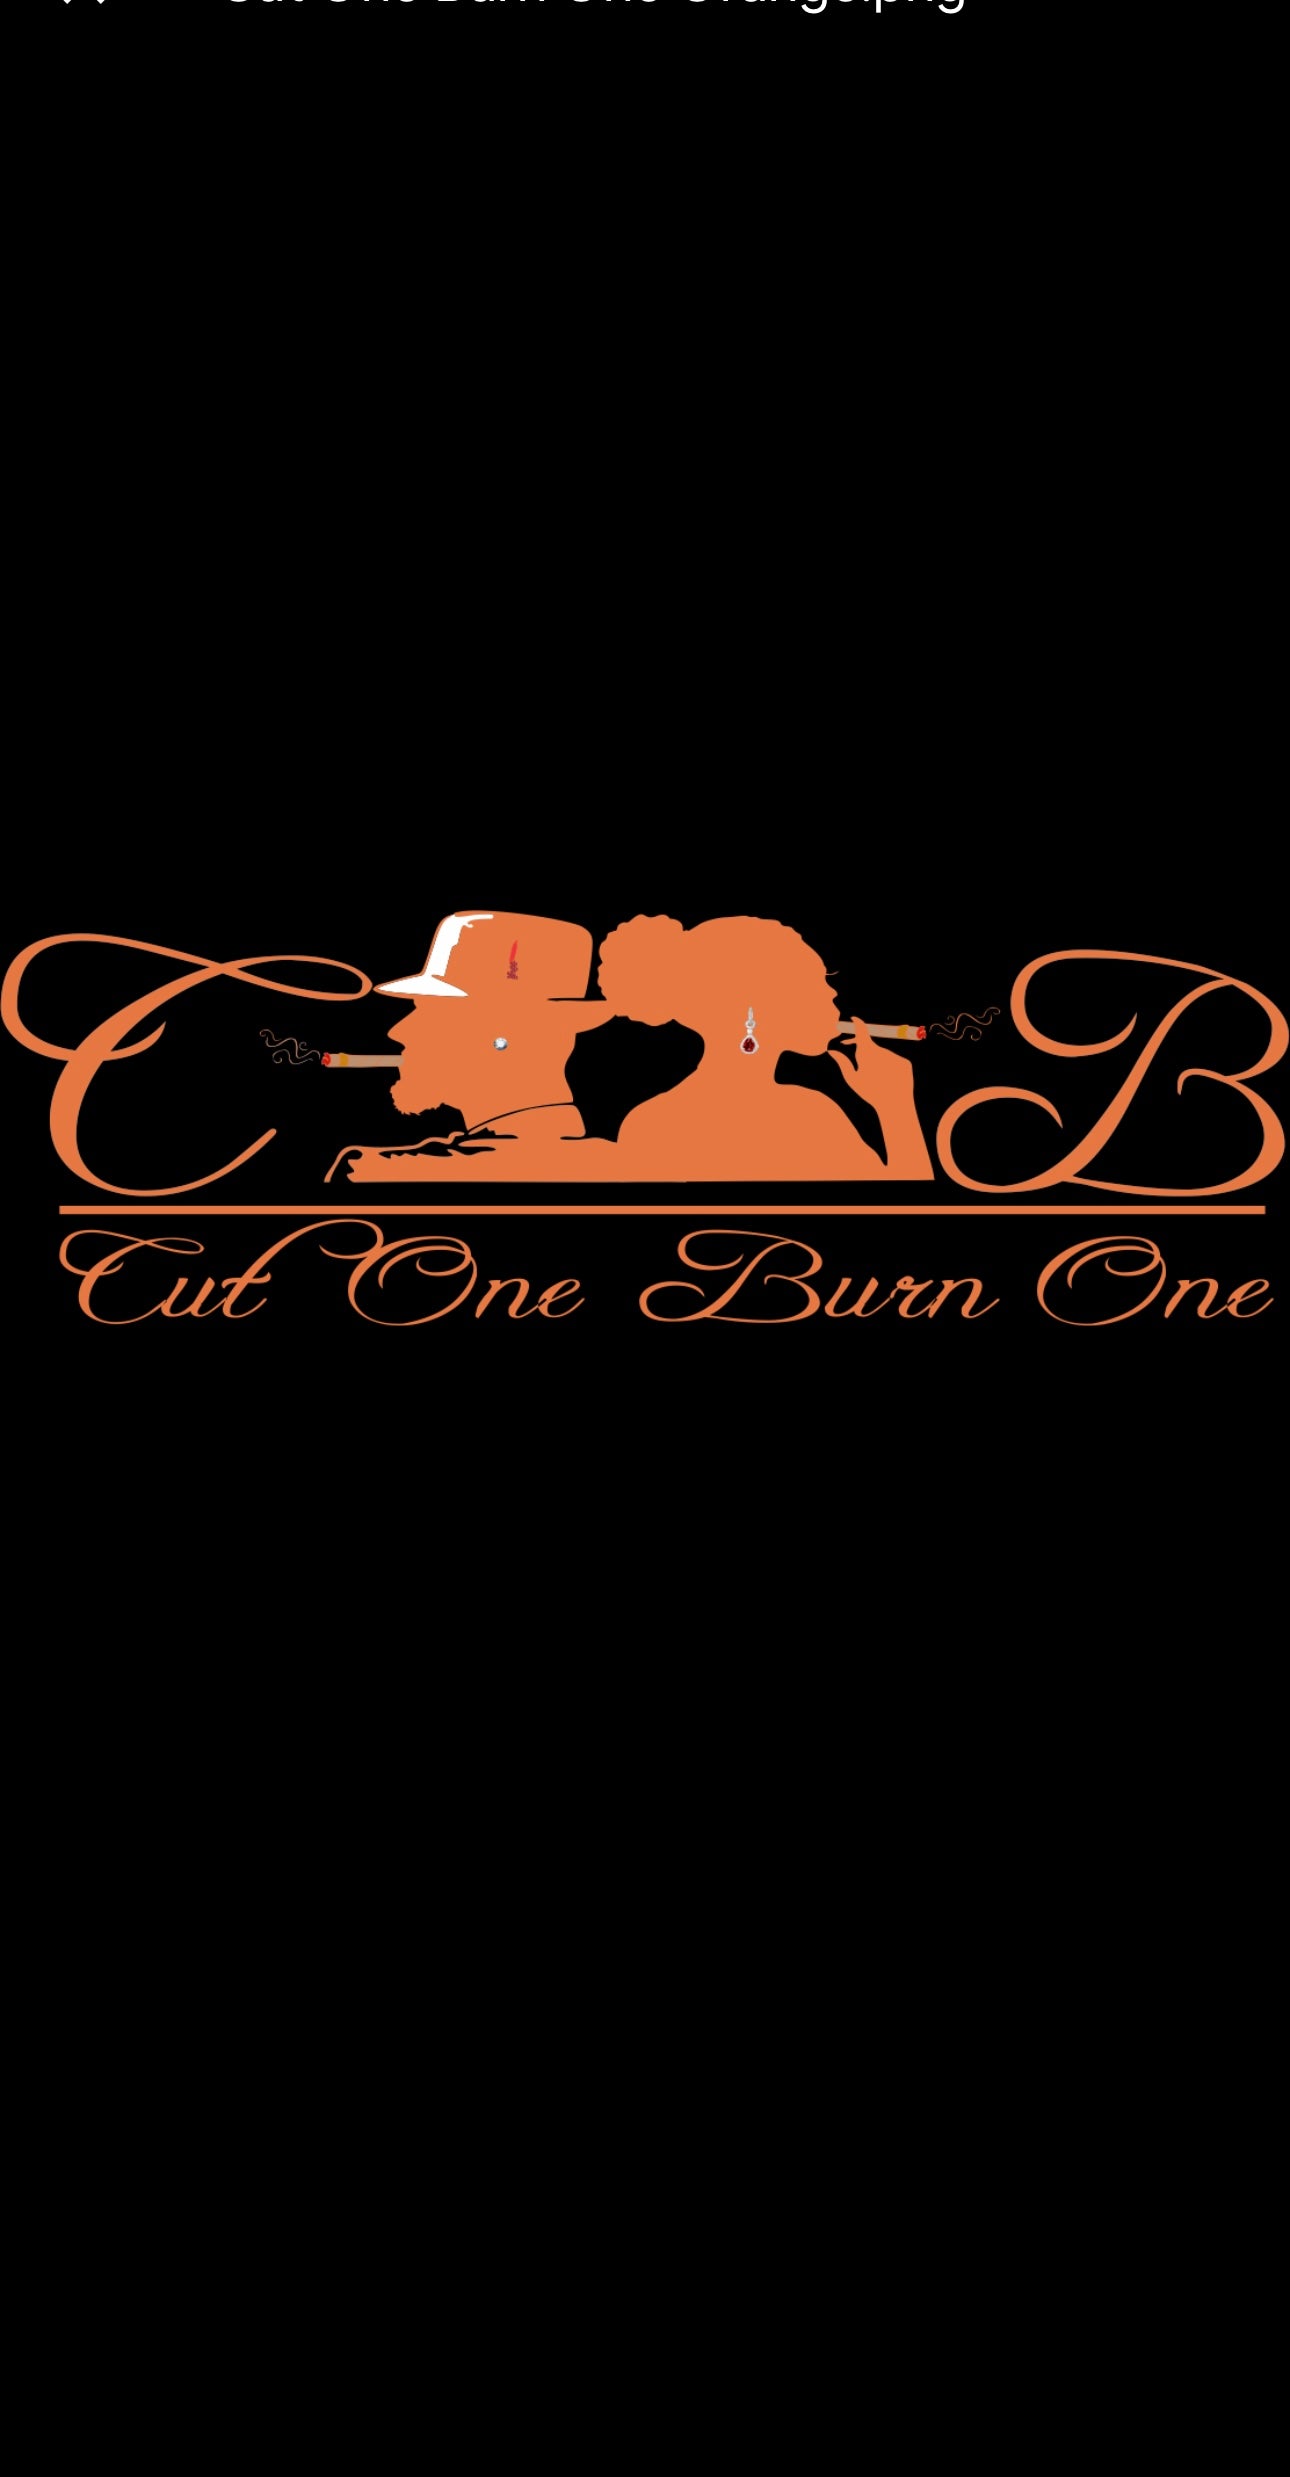 Cut One Burn One Logo’s Orange & Black Tee’s